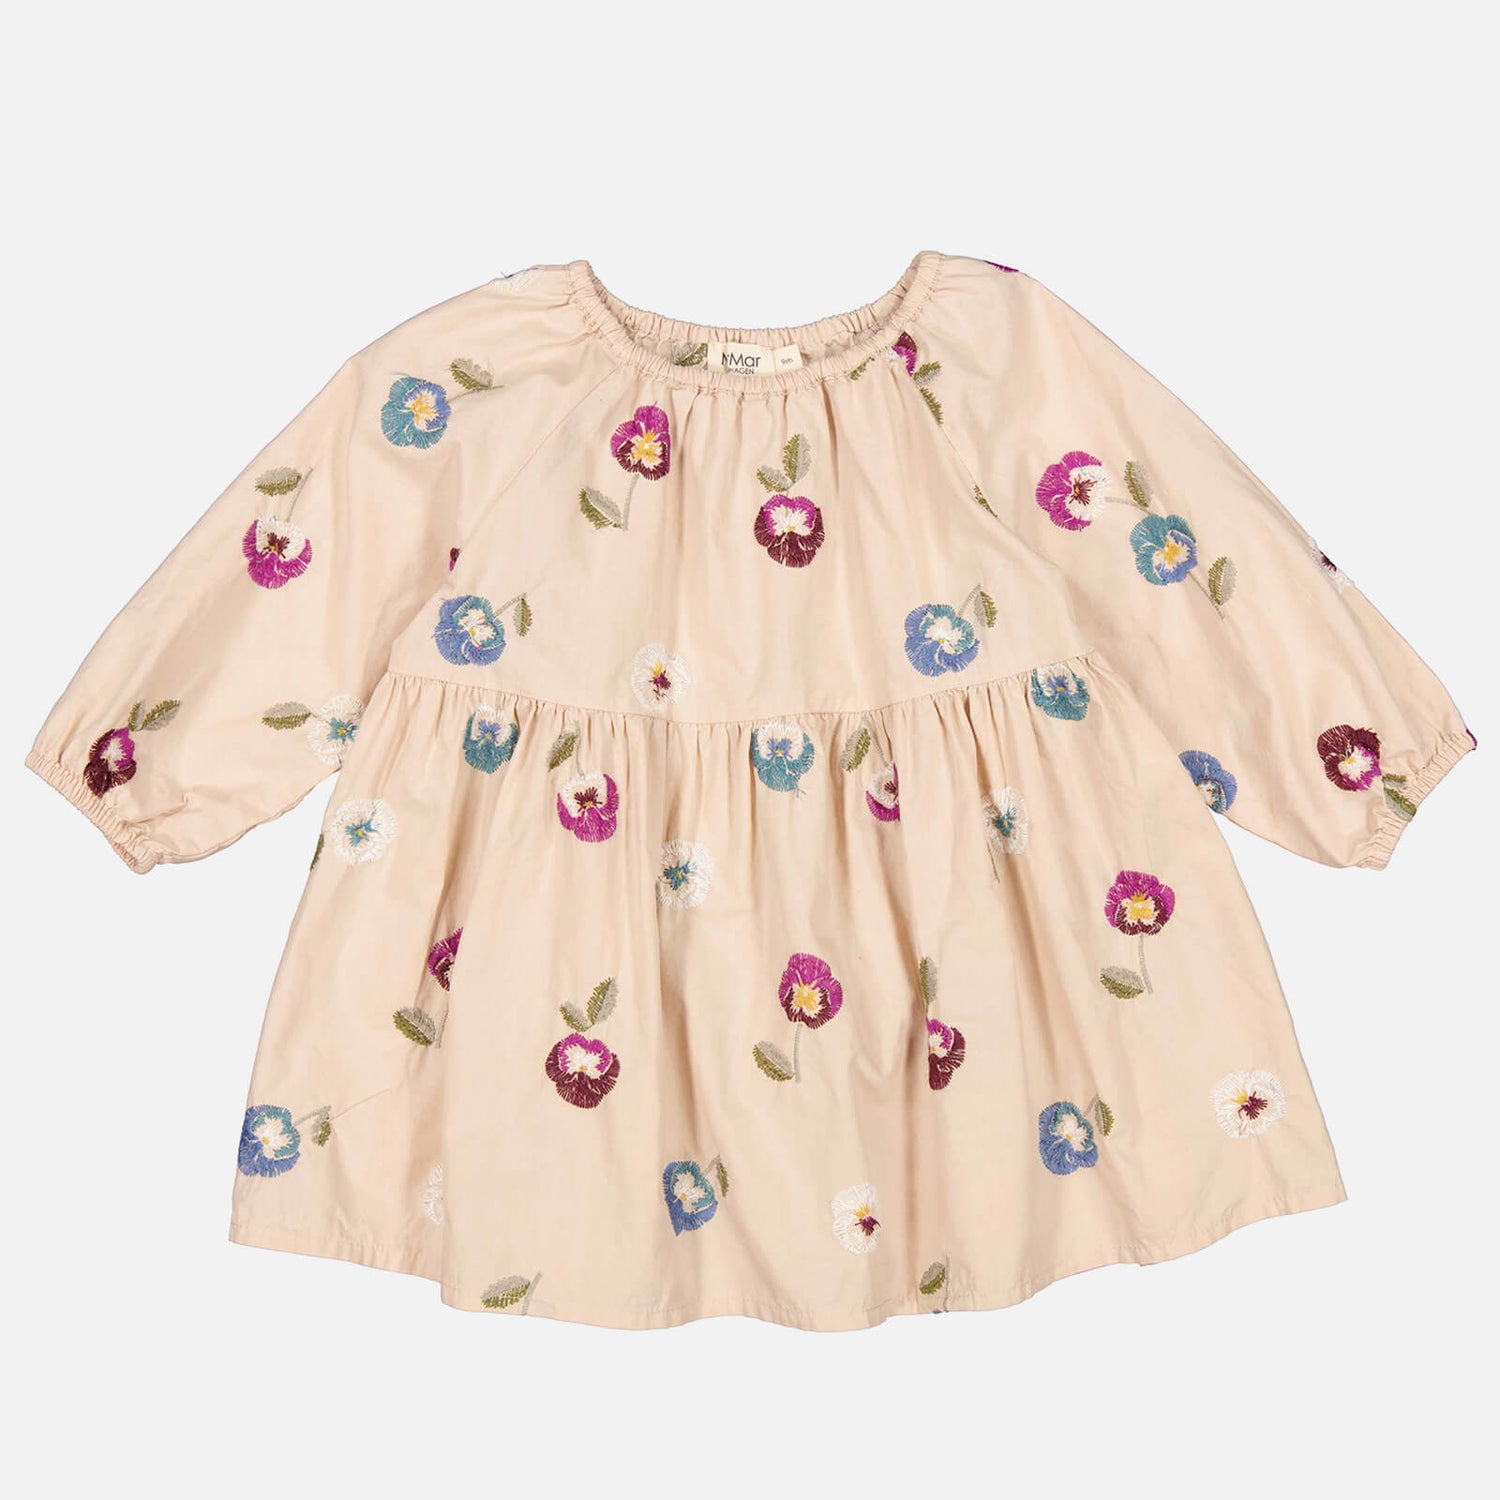 MarMar Copenhagen Babies' Dawson Printed Cotton Dress - 4 Months